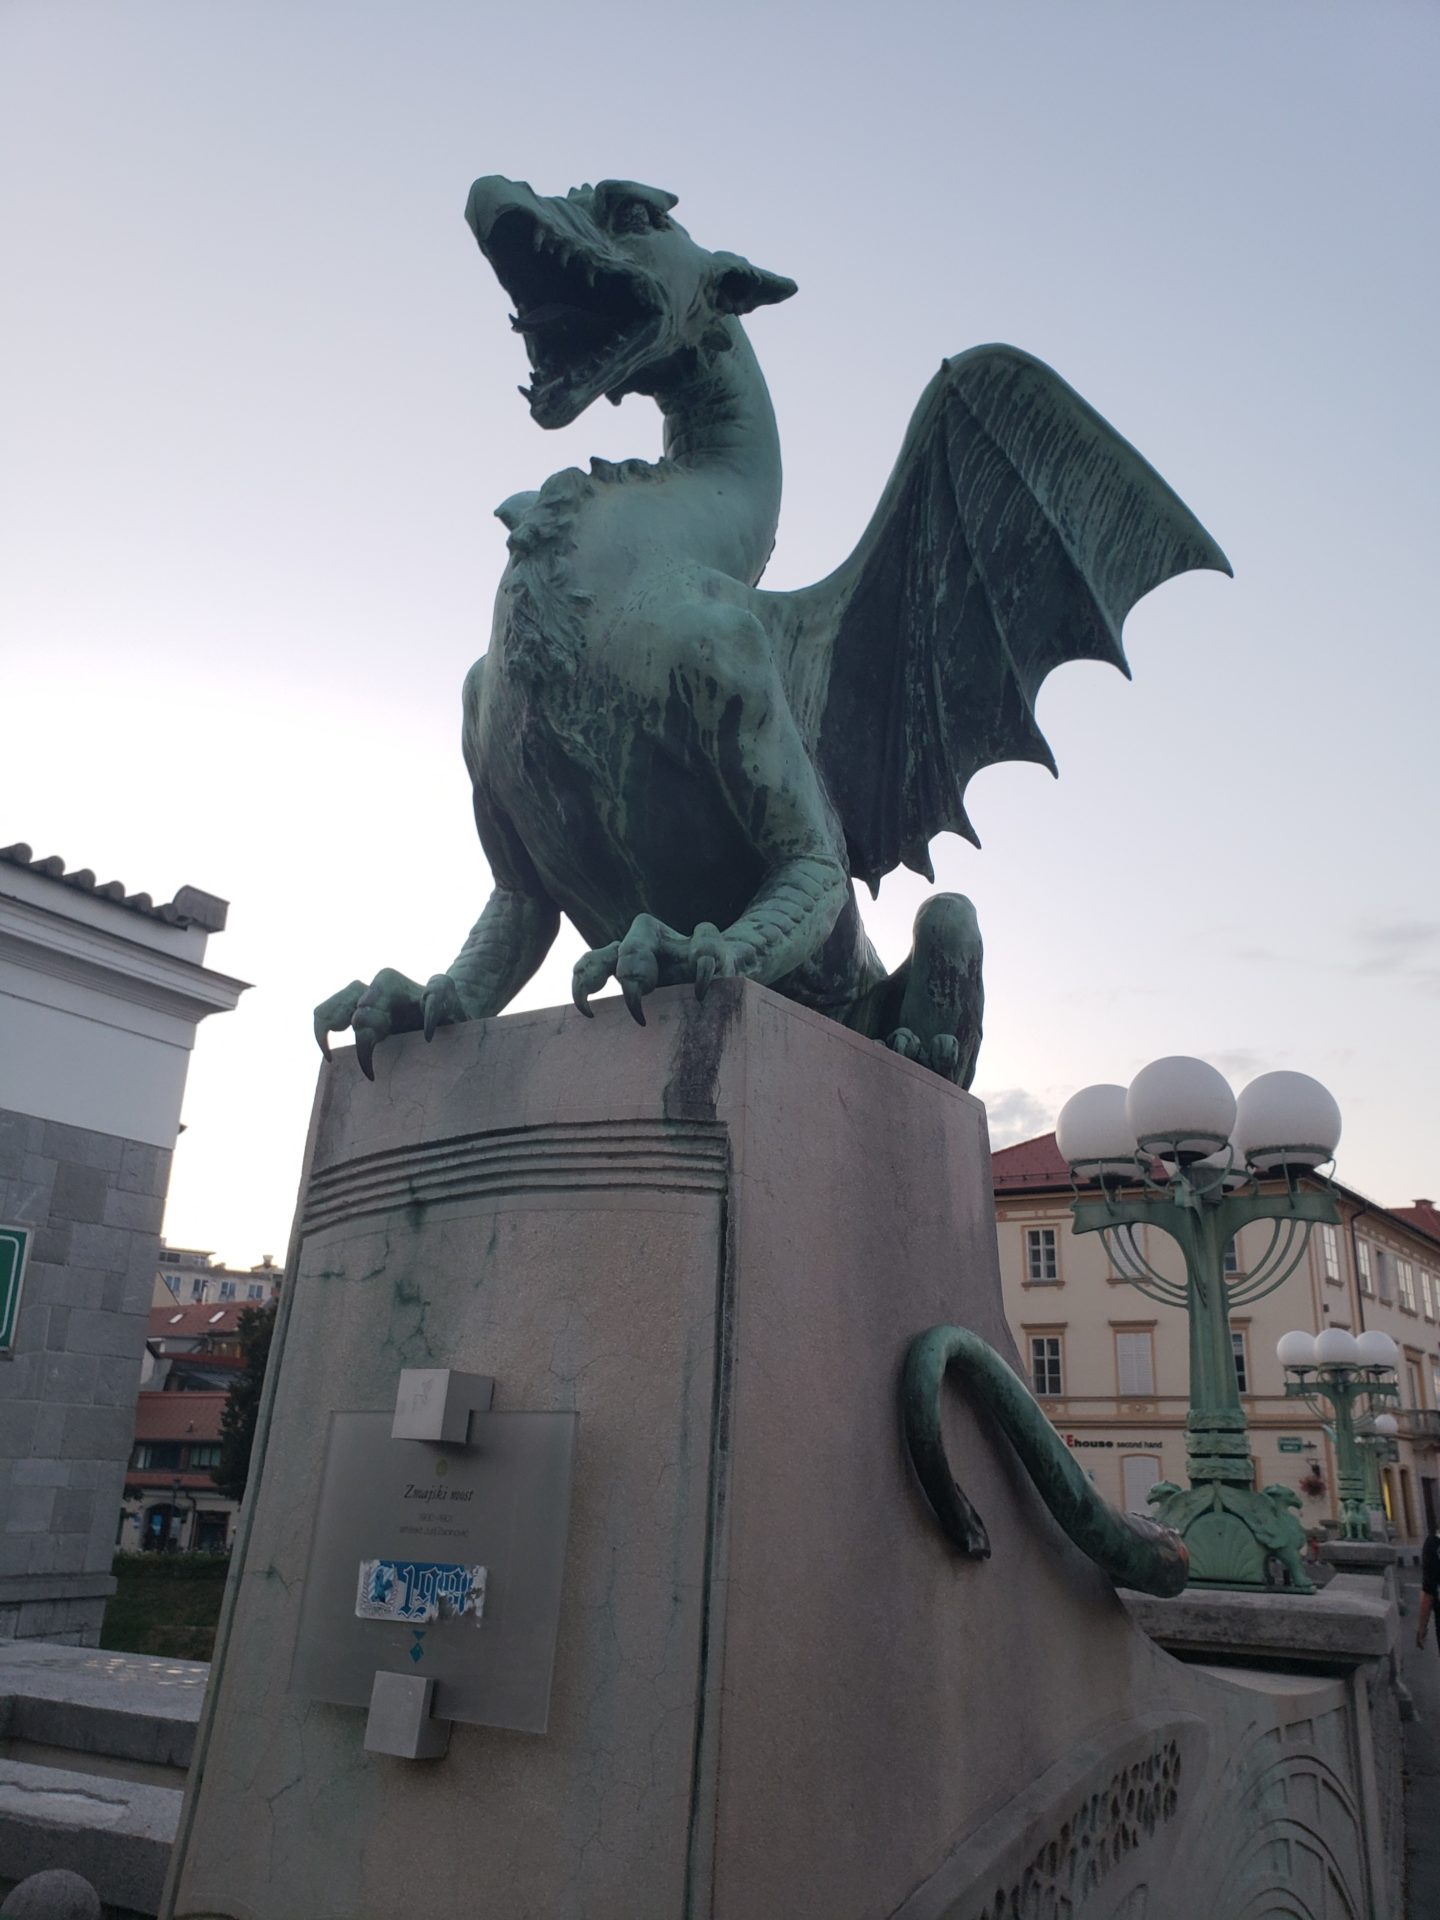 a green dragon statue on a concrete platform